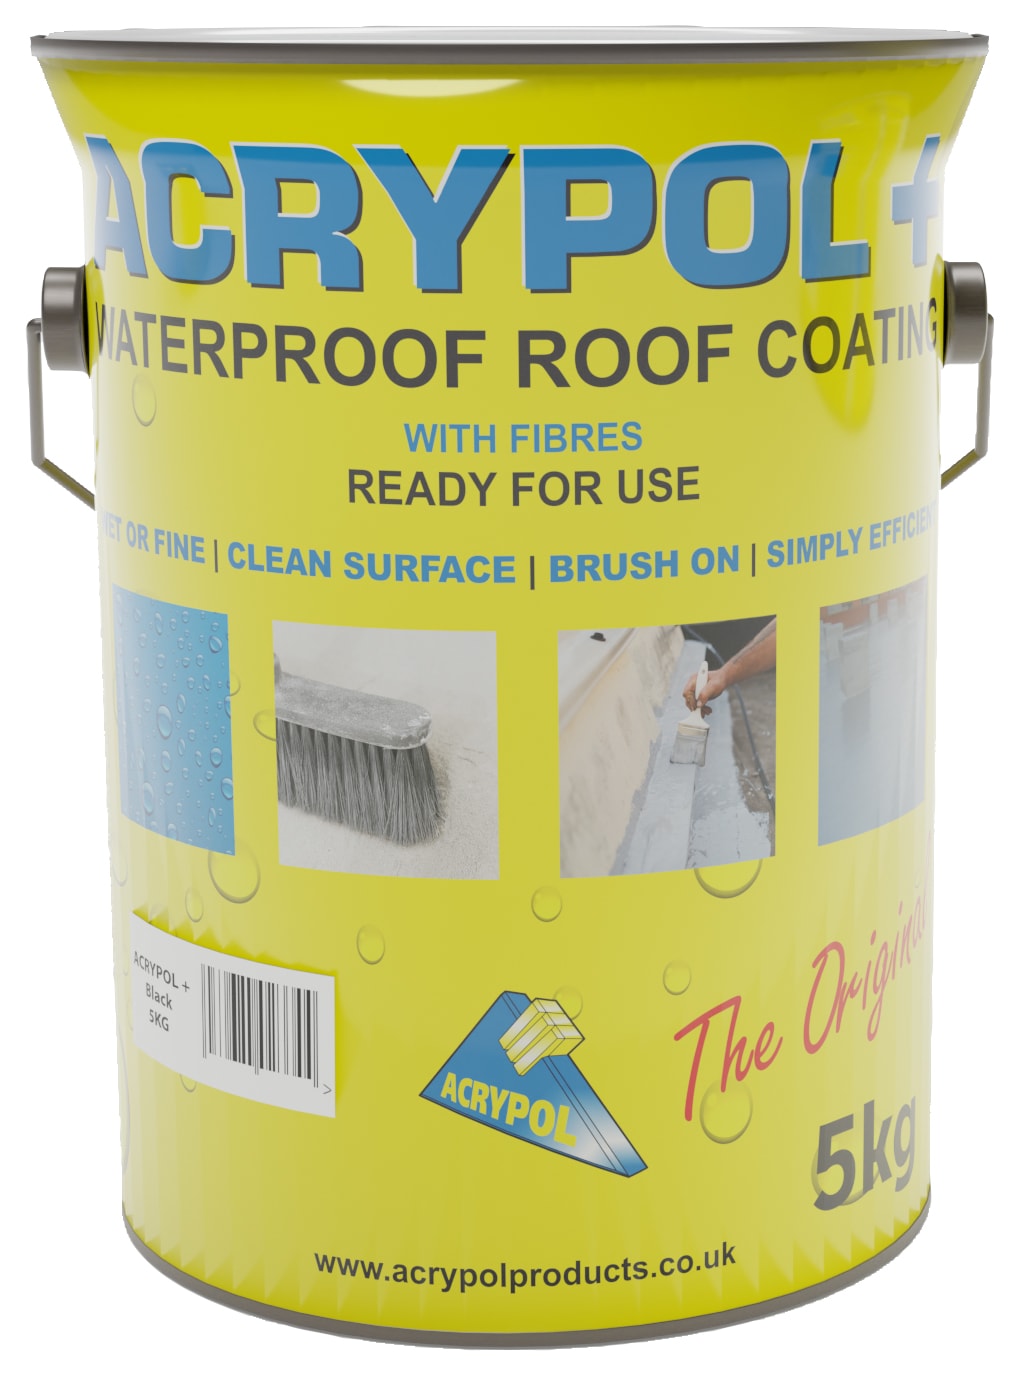 Acrypol+ Black Waterproof Roof Coating - 5kg